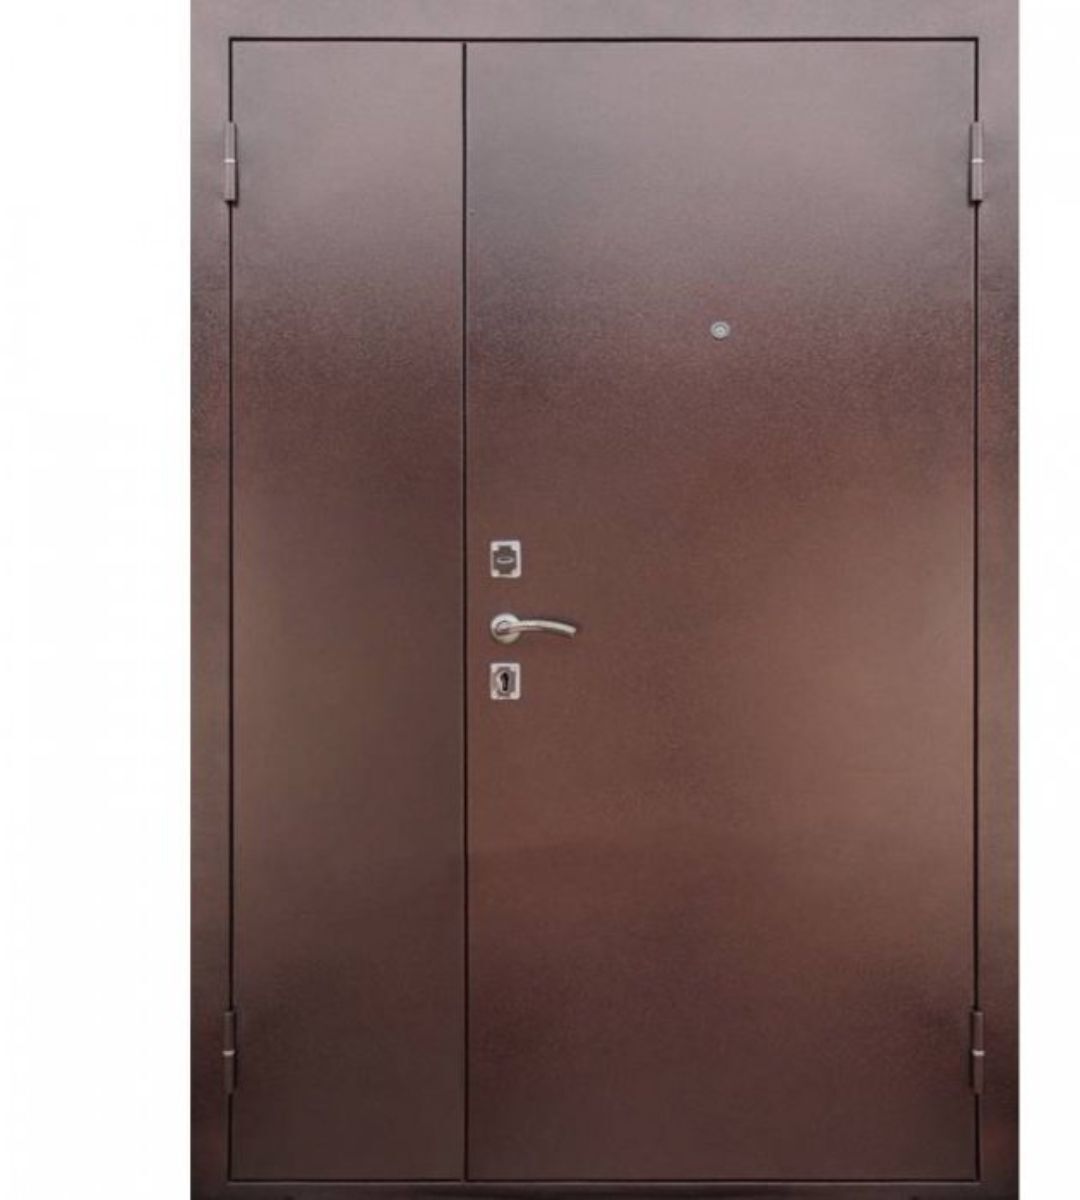 Железная тамбурная дверь. Дверь металлическая двухстворчатая 2050 x 1250 мм. Входная дверь двустворчатая металл/металл. Дверь металлическая двухстворчатая 1250x2050. Дверь железная медный антик входная.